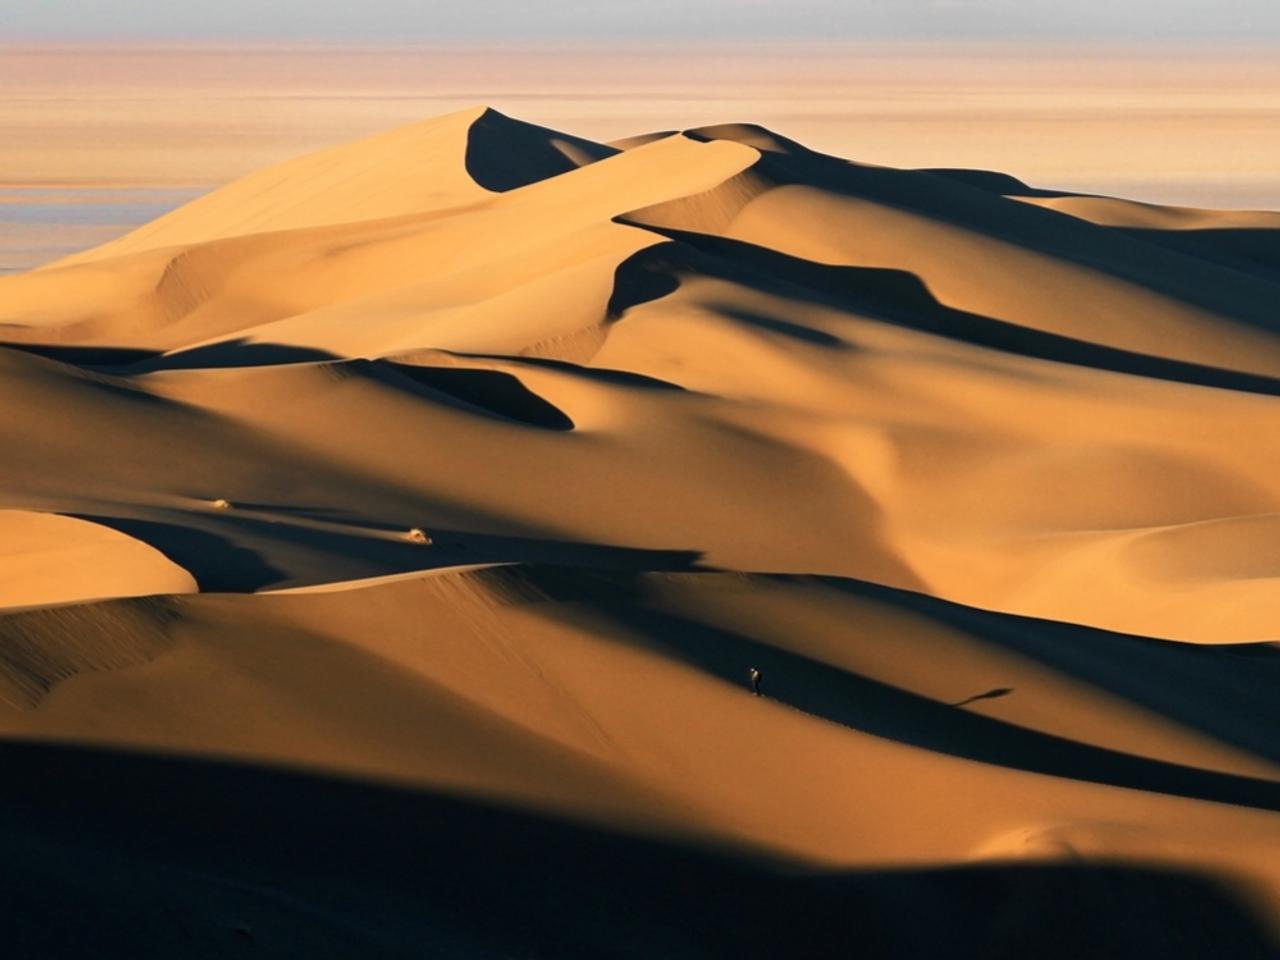 人工知能には｢砂漠｣の画像がエロ画像に見えるらしい